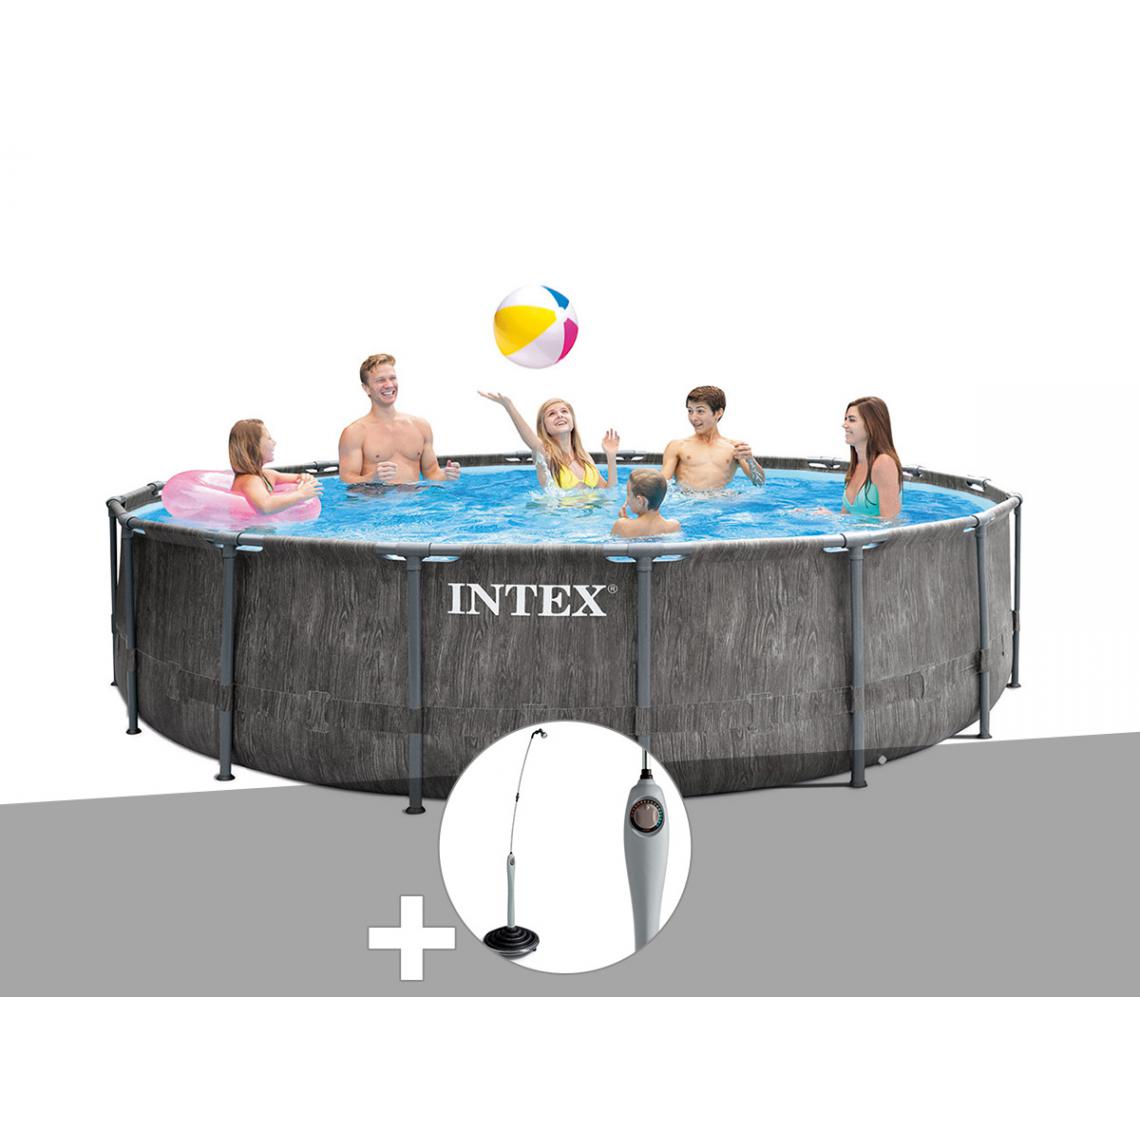 Intex - Kit piscine tubulaire Intex Baltik ronde 5,49 x 1,22 m + Douche solaire - Piscine Tubulaire